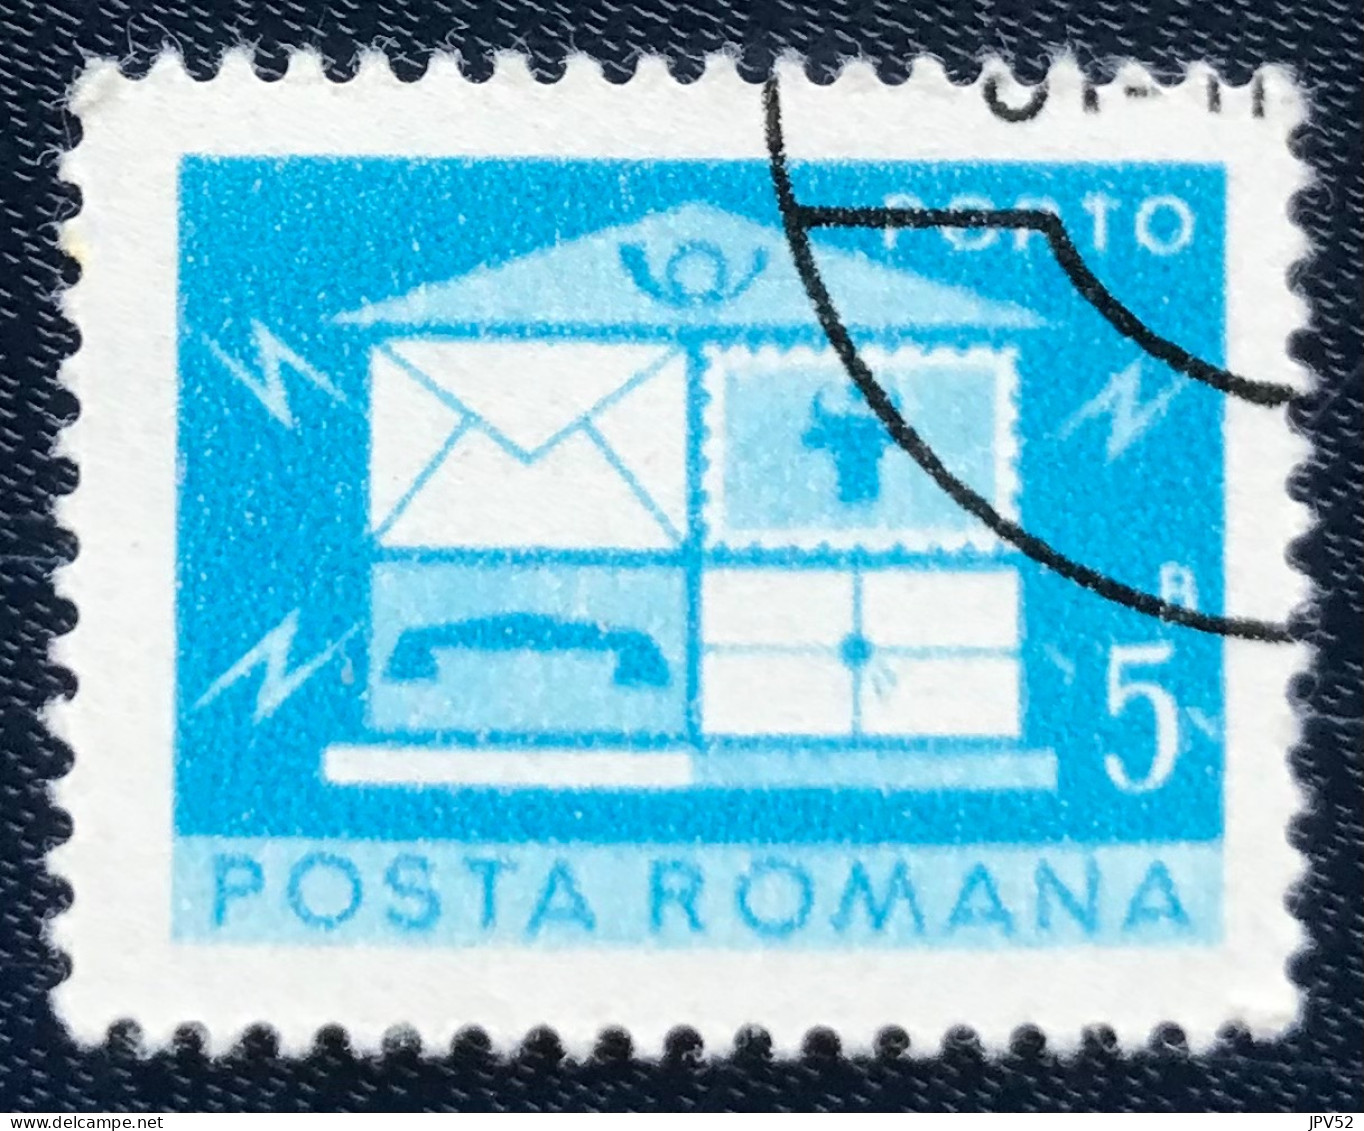 Romana - Roemenië - C14/54 - 1974 - (°)used - Michel 119 - Brievenbus - Strafport